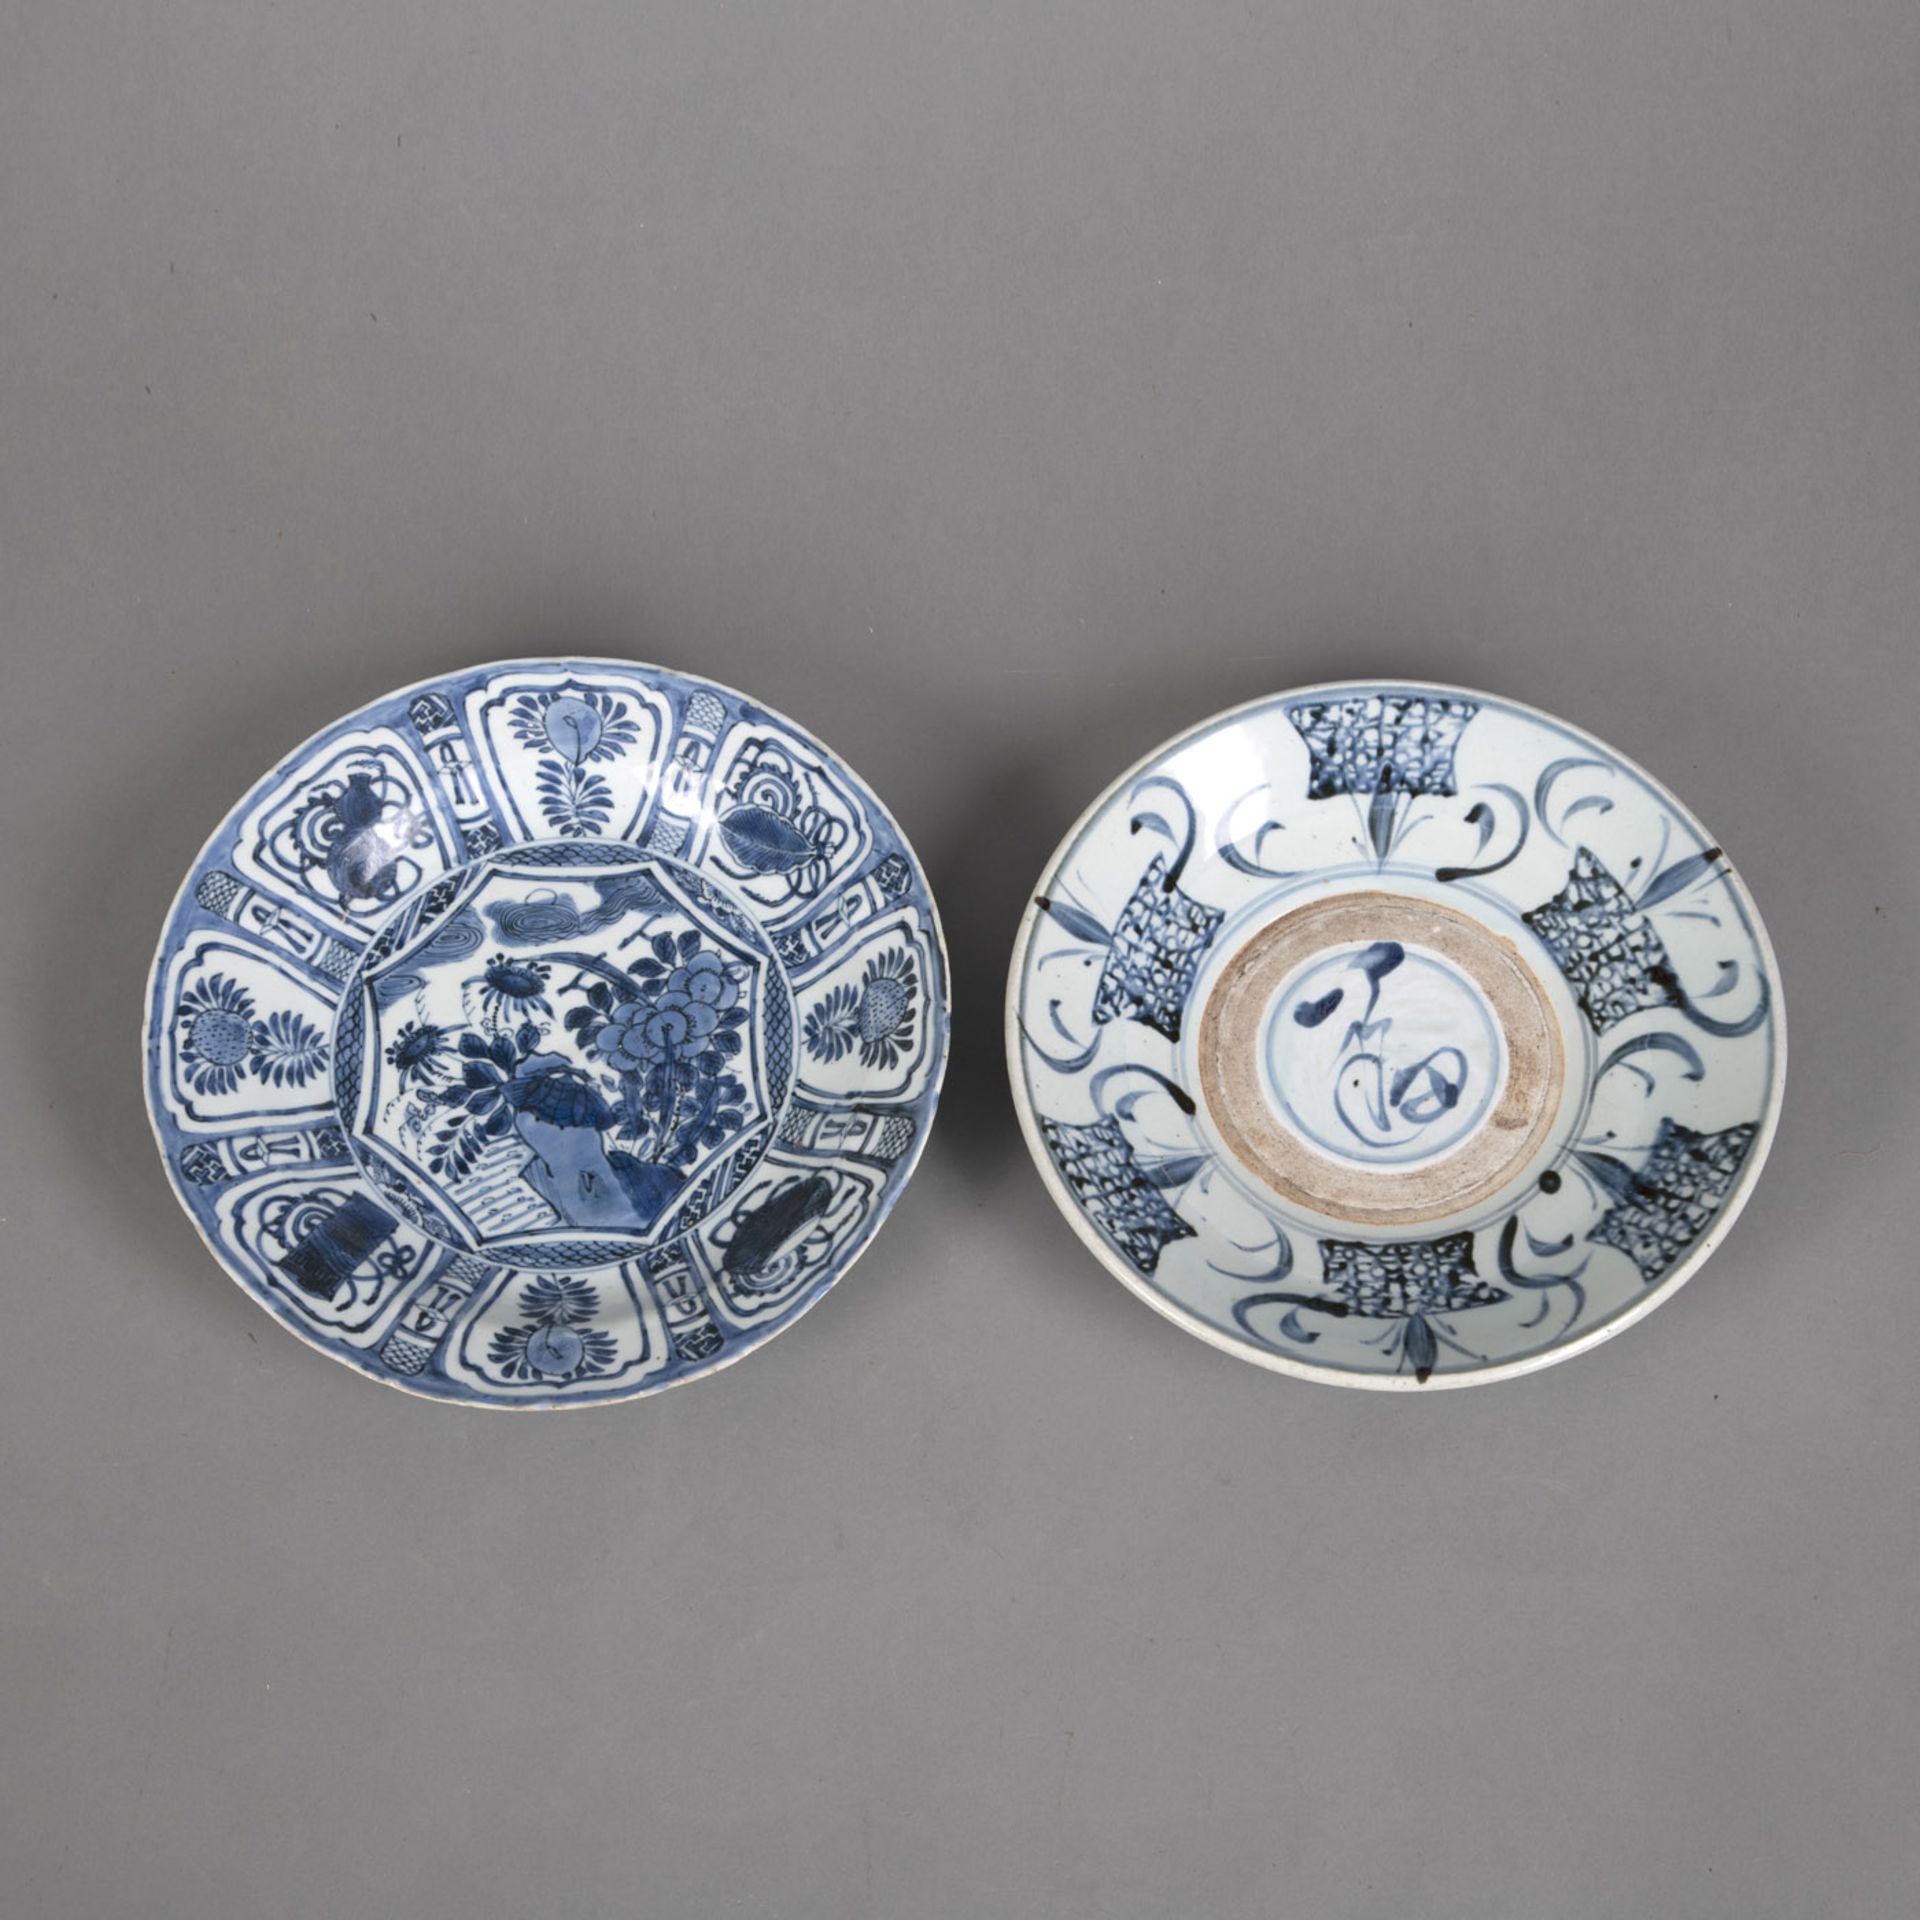 Kraak-Teller mit unterglasurblauem Floraldekor und Exportteller mit 'Fu'-Schriftzeichen